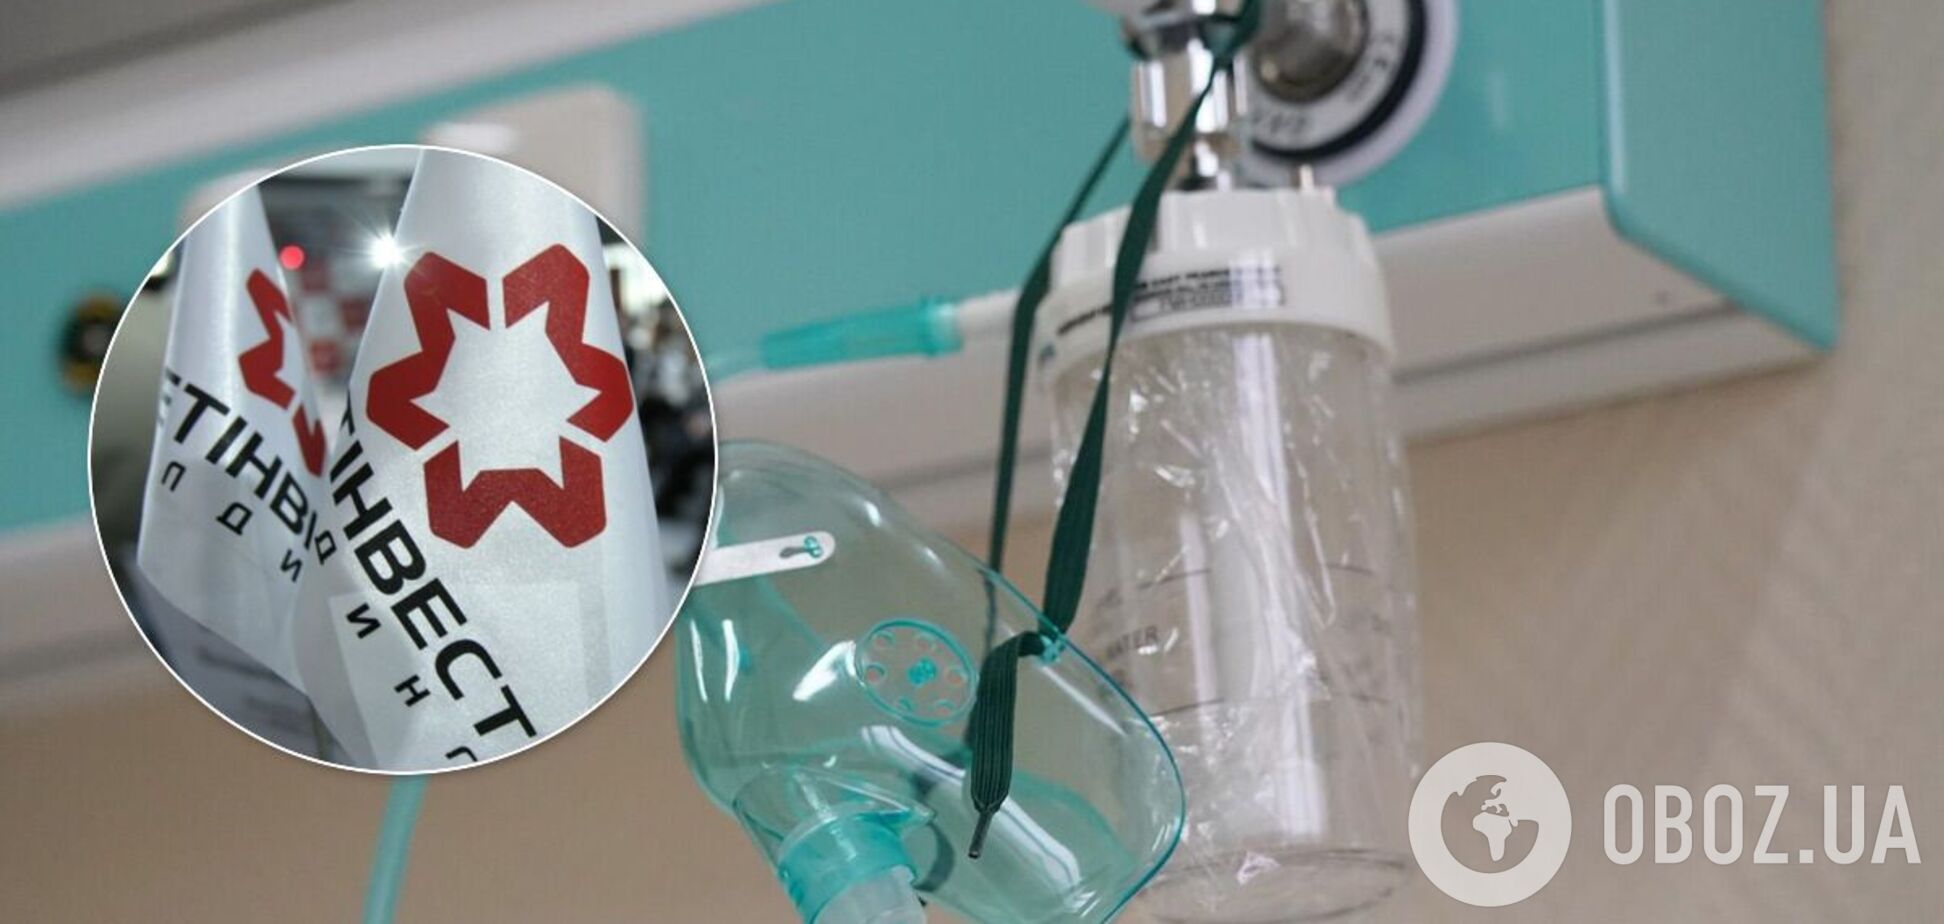 У Маріуполі меткомбінати збільшили постачання кисню в лікарні